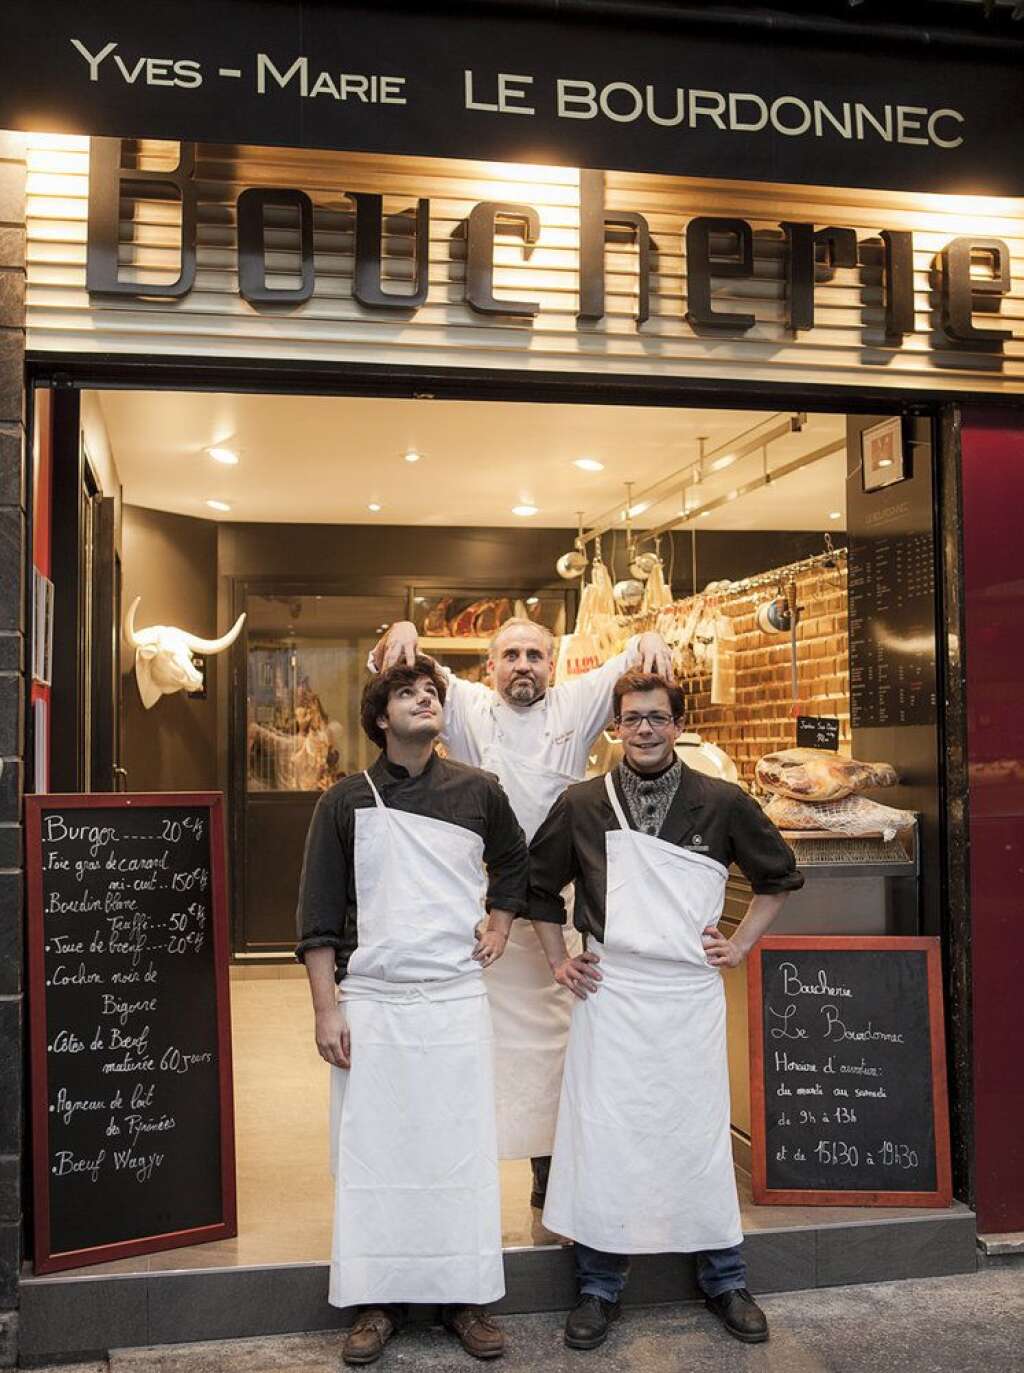 La boucherie Le Bouronnec - YM LE BOURDONNEC – PARIS 6EME 43 Rue du Cherche-Midi 75006 Paris Tél : 01 42 22 35 52